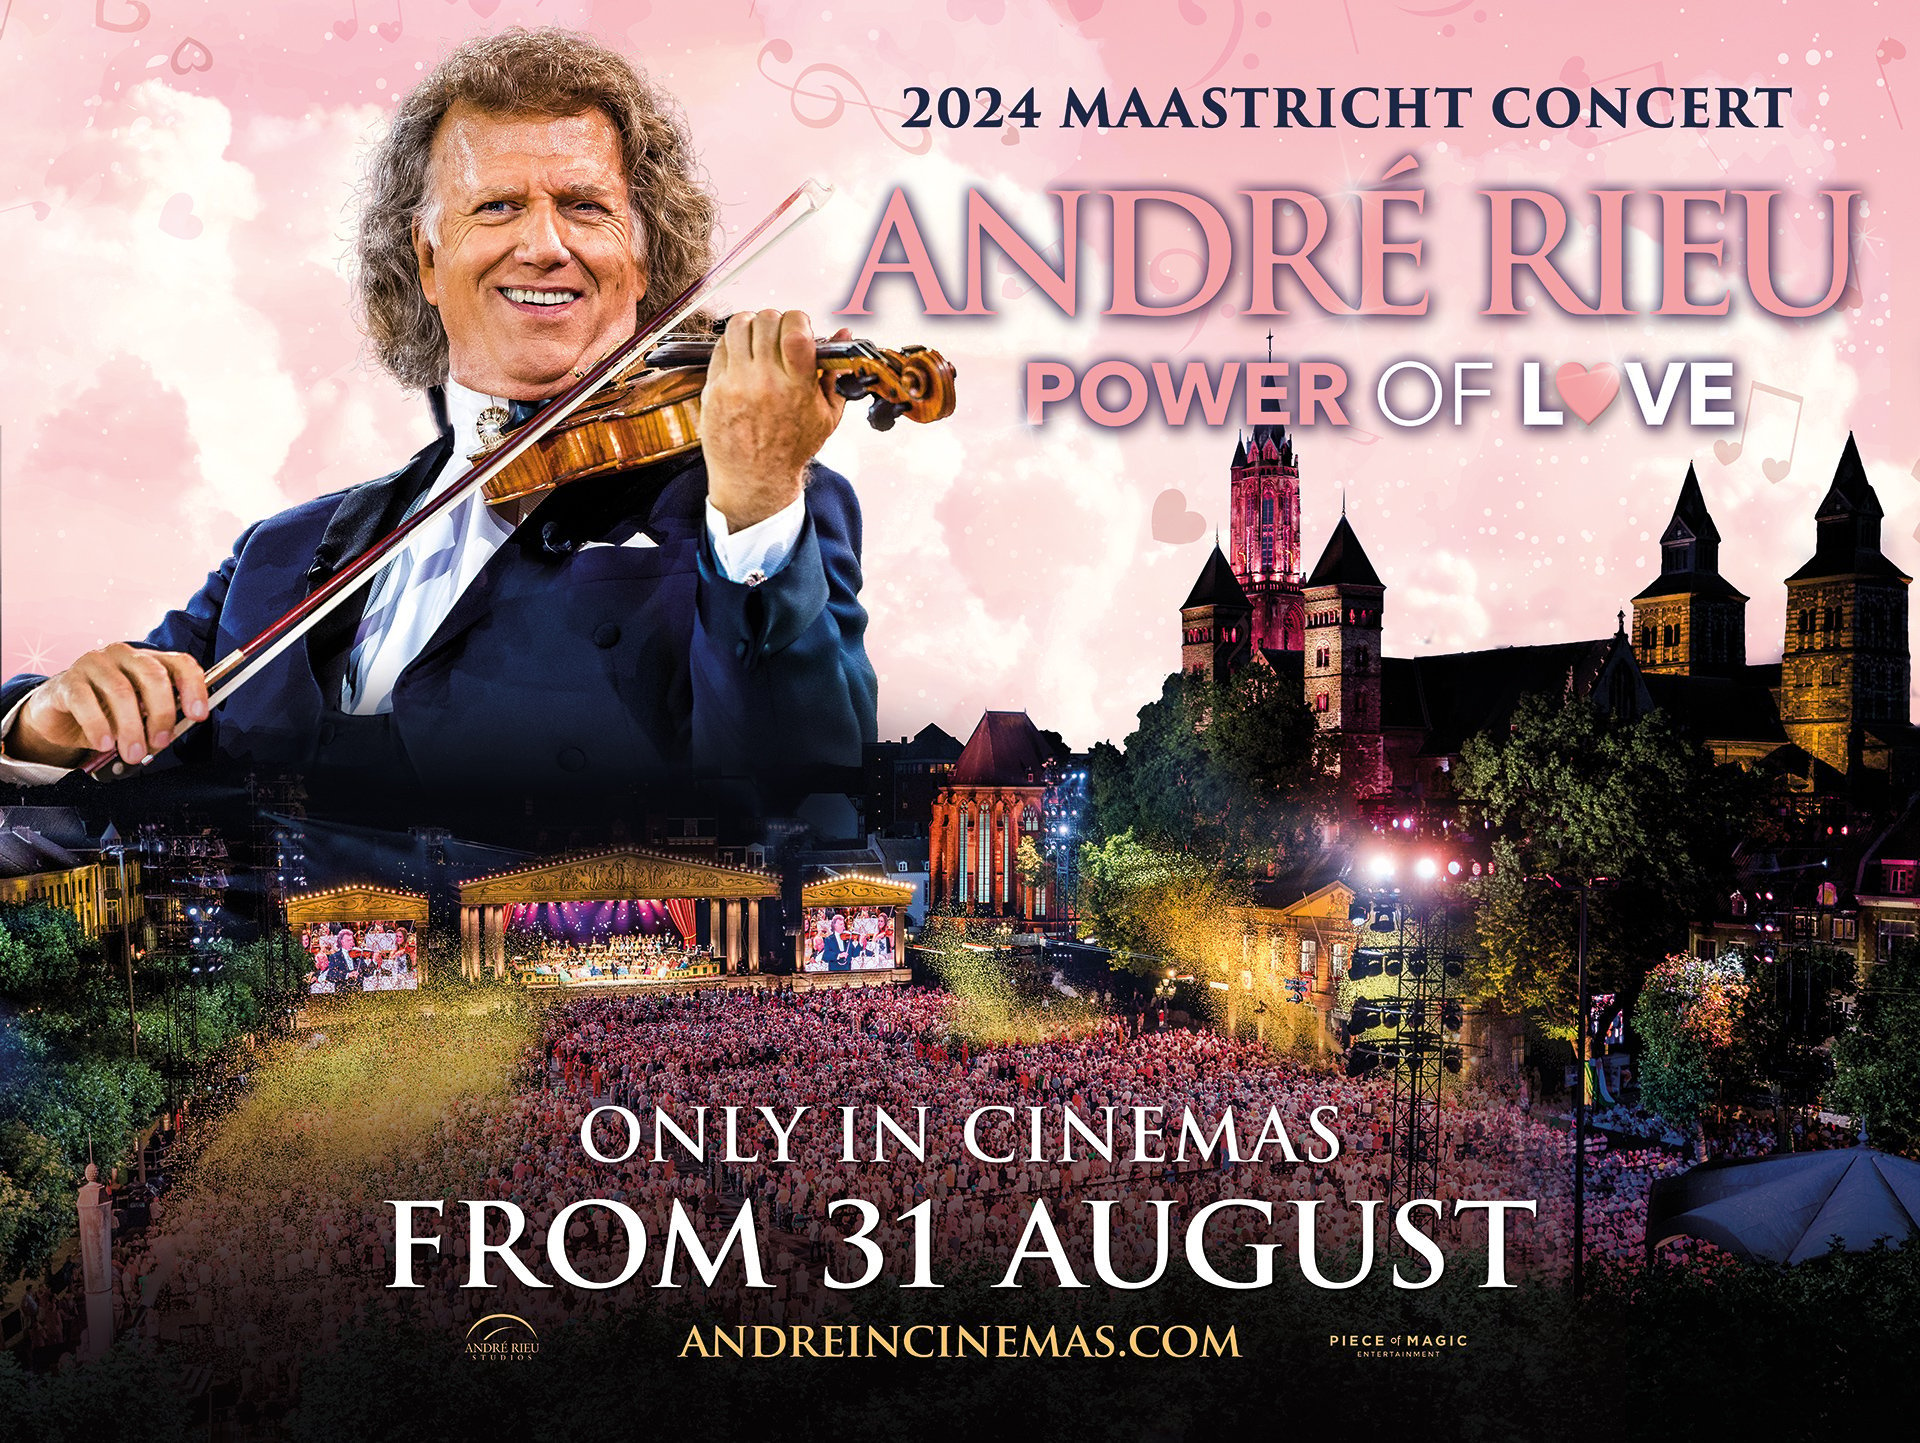 André Rieu Maastricht Concert 2024 'Power of Love'